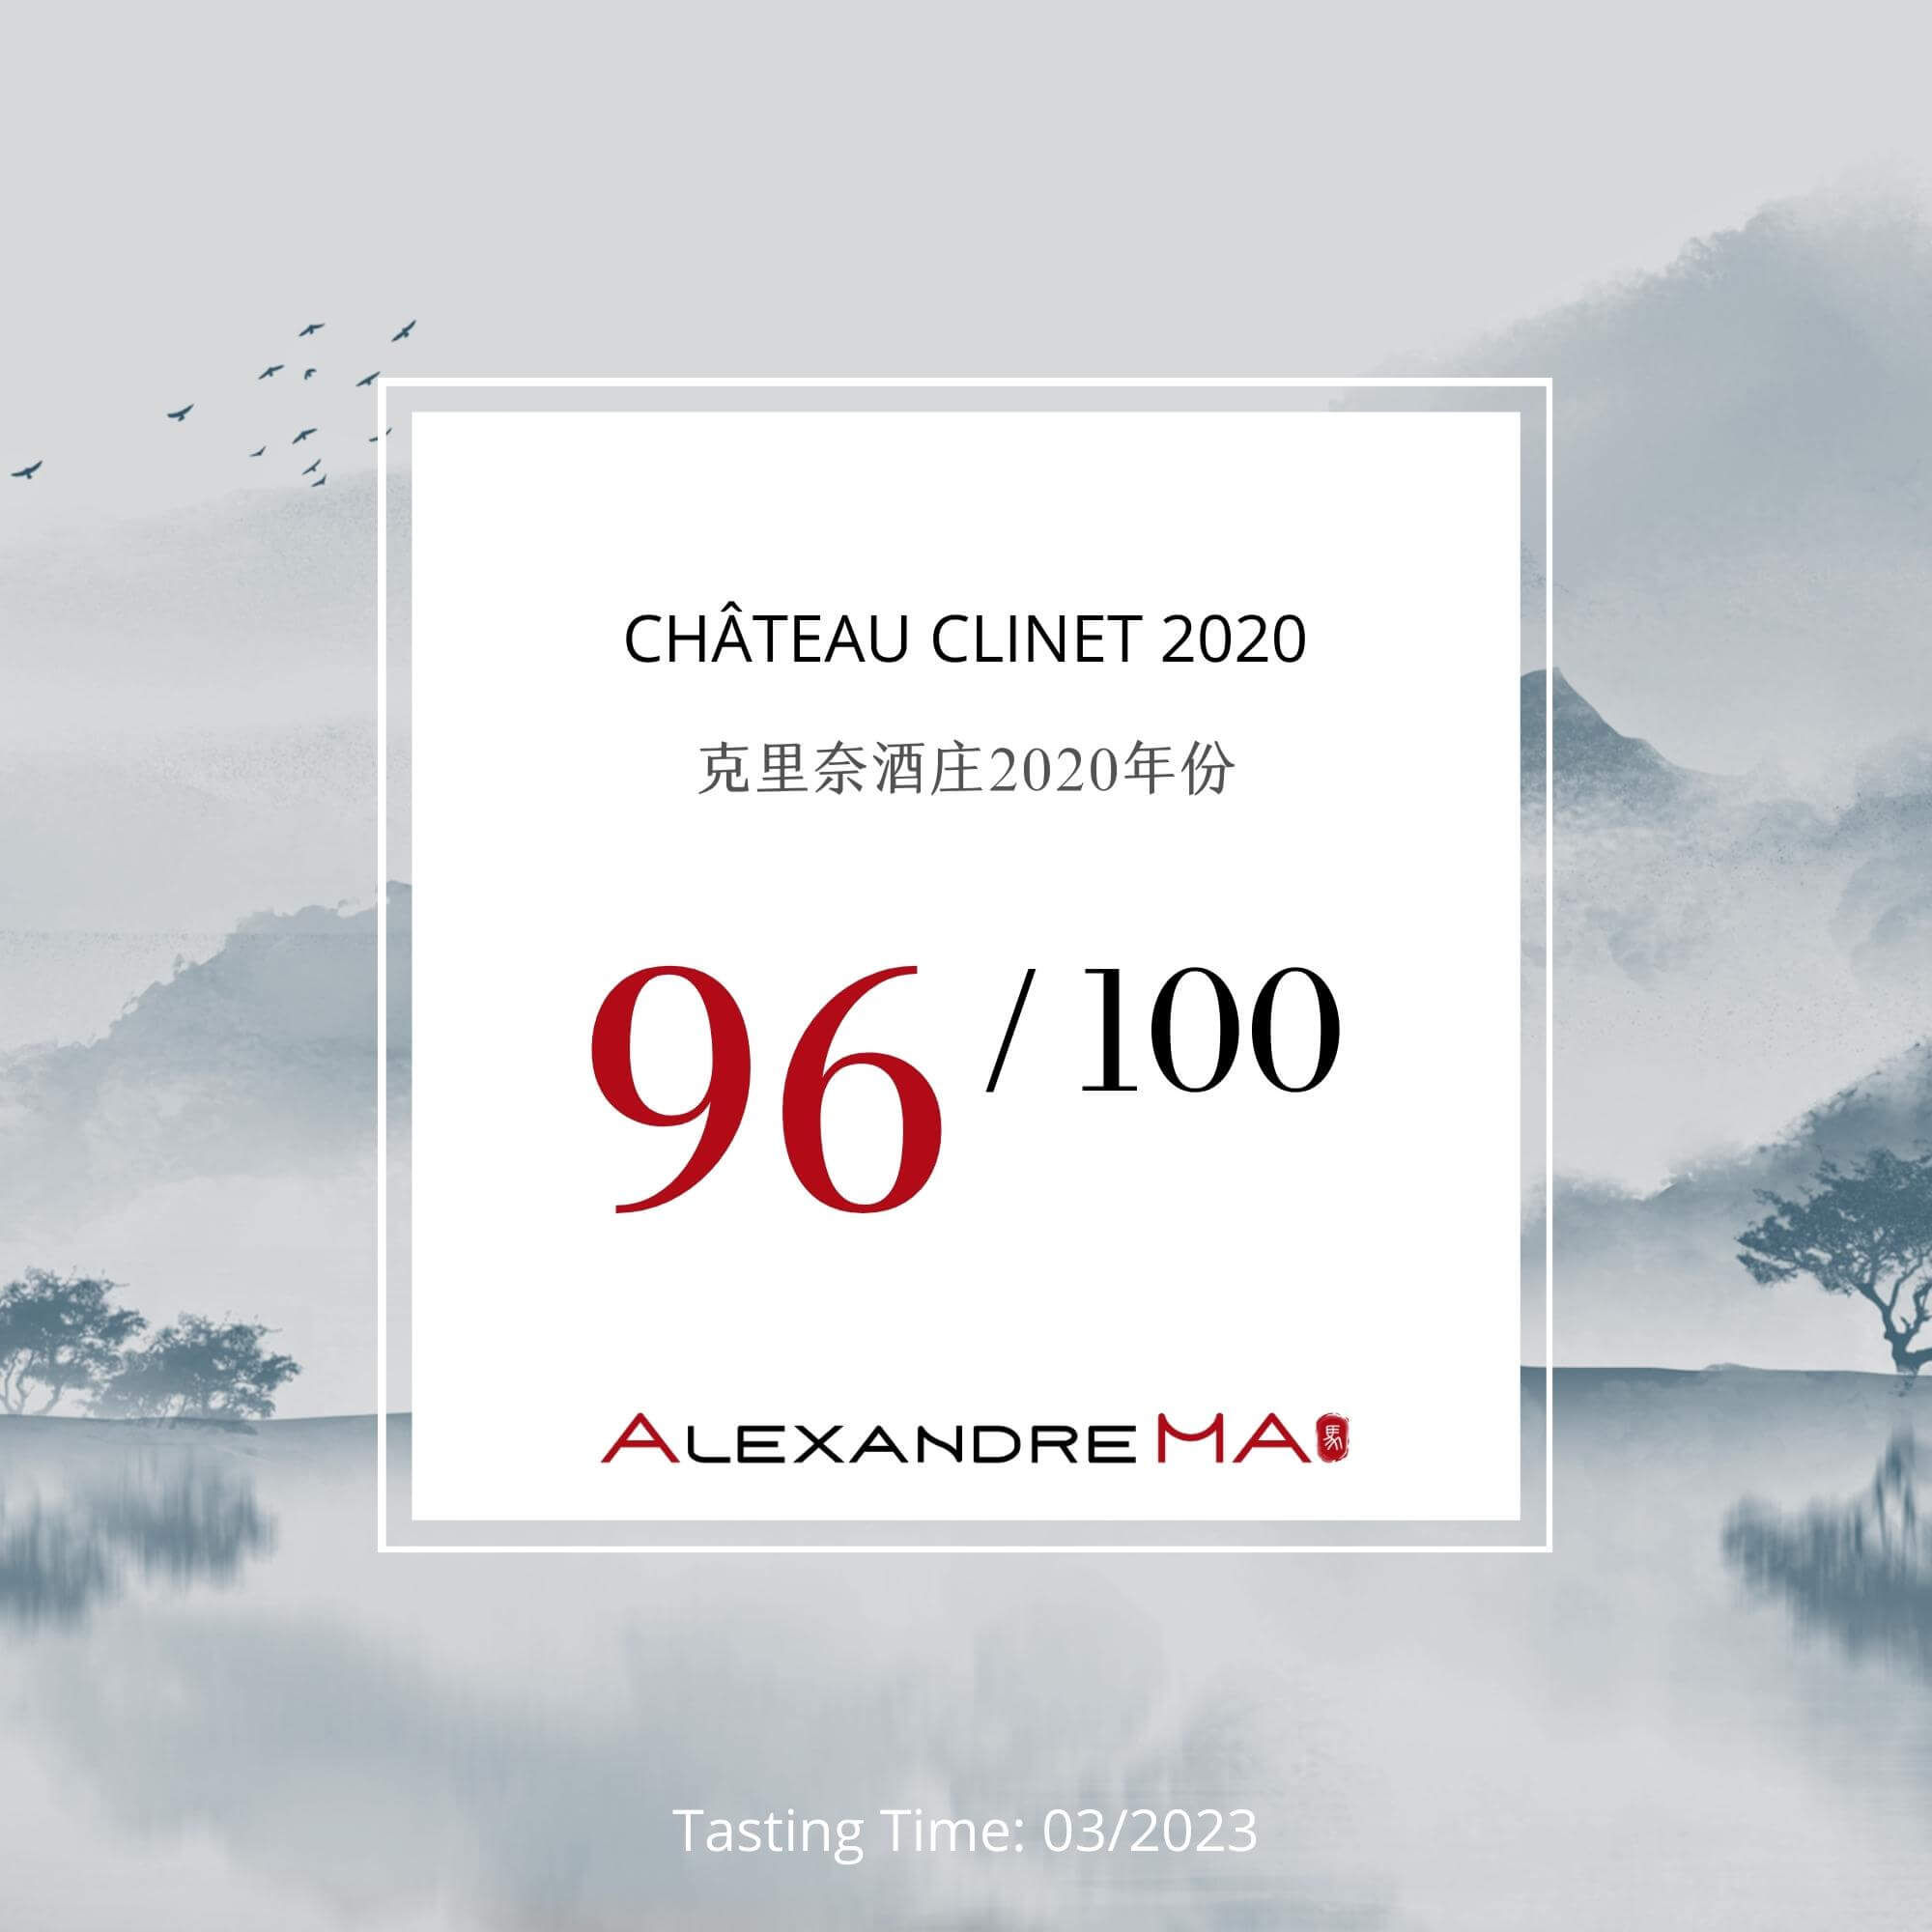 Château Clinet 2020 - Alexandre MA